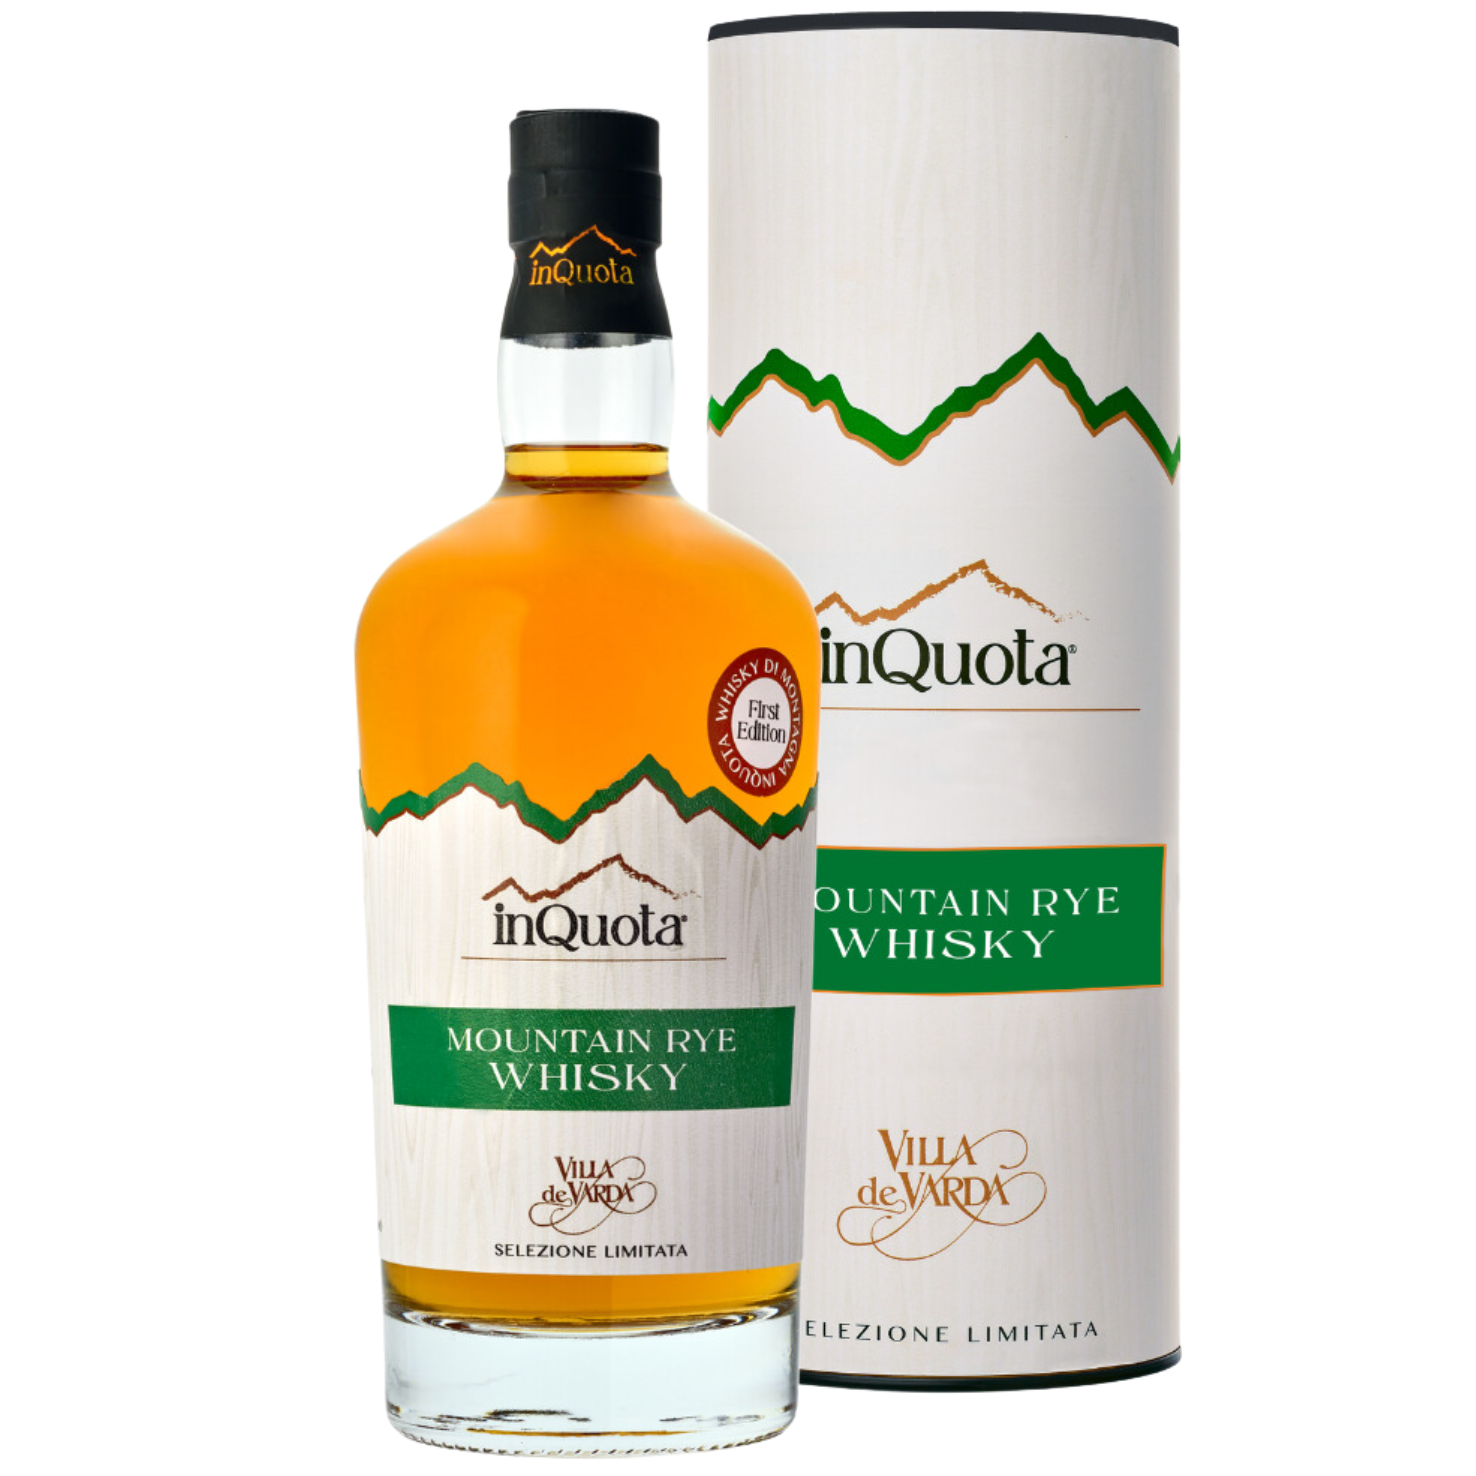 PRIMA EDIZIONE Whisky di Montagna di Segale, bottiglia, selezione limitata